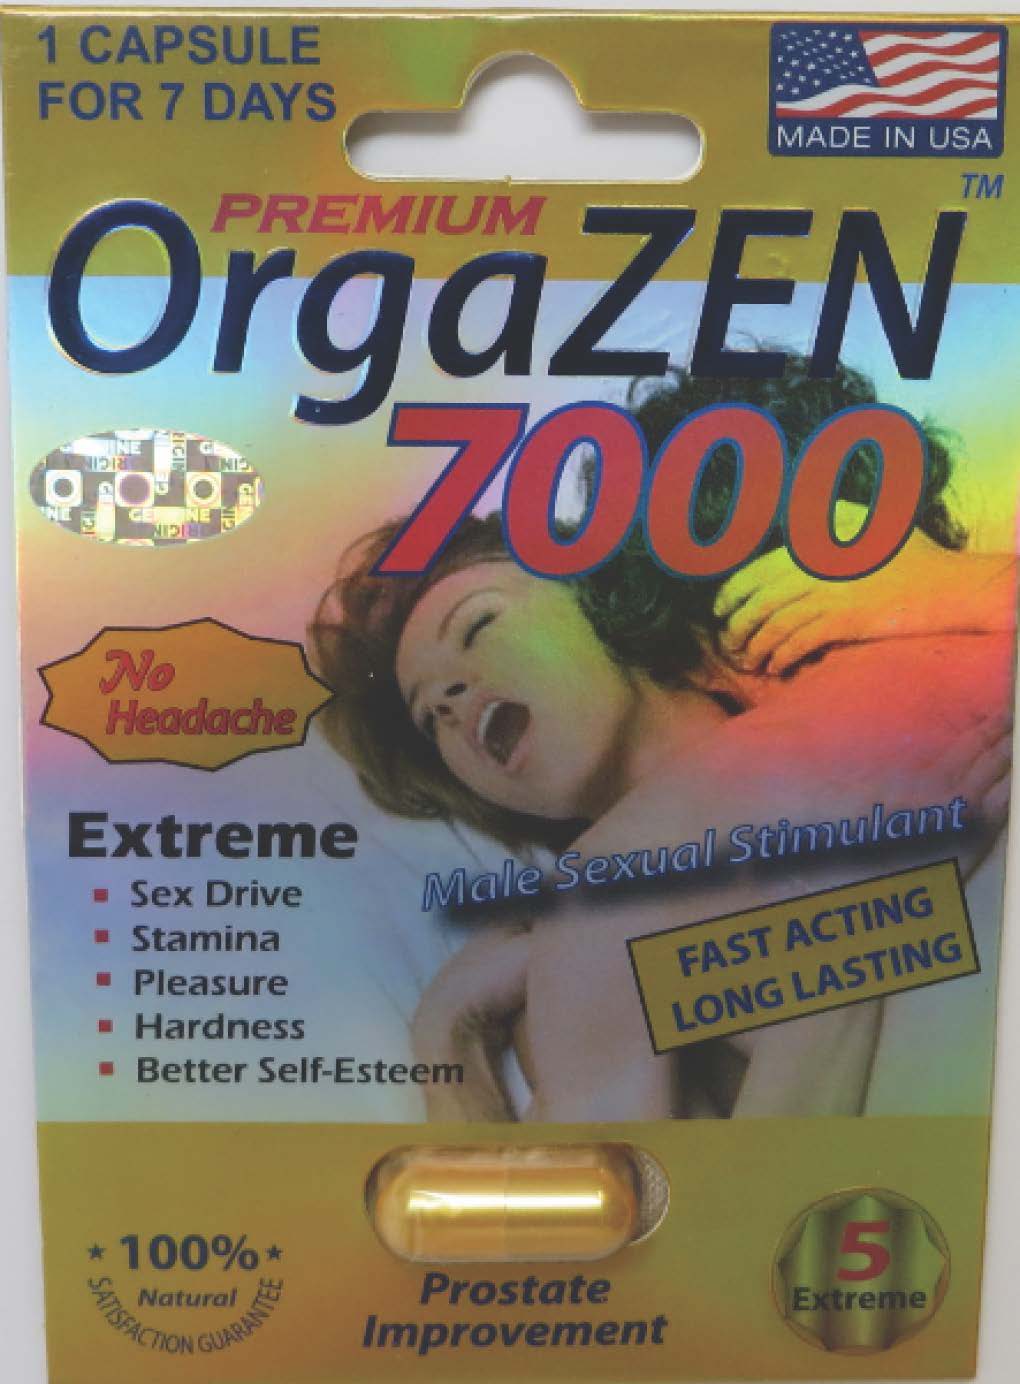 Billede af det ulovlige produkt: Premium OrgaZEN 7000